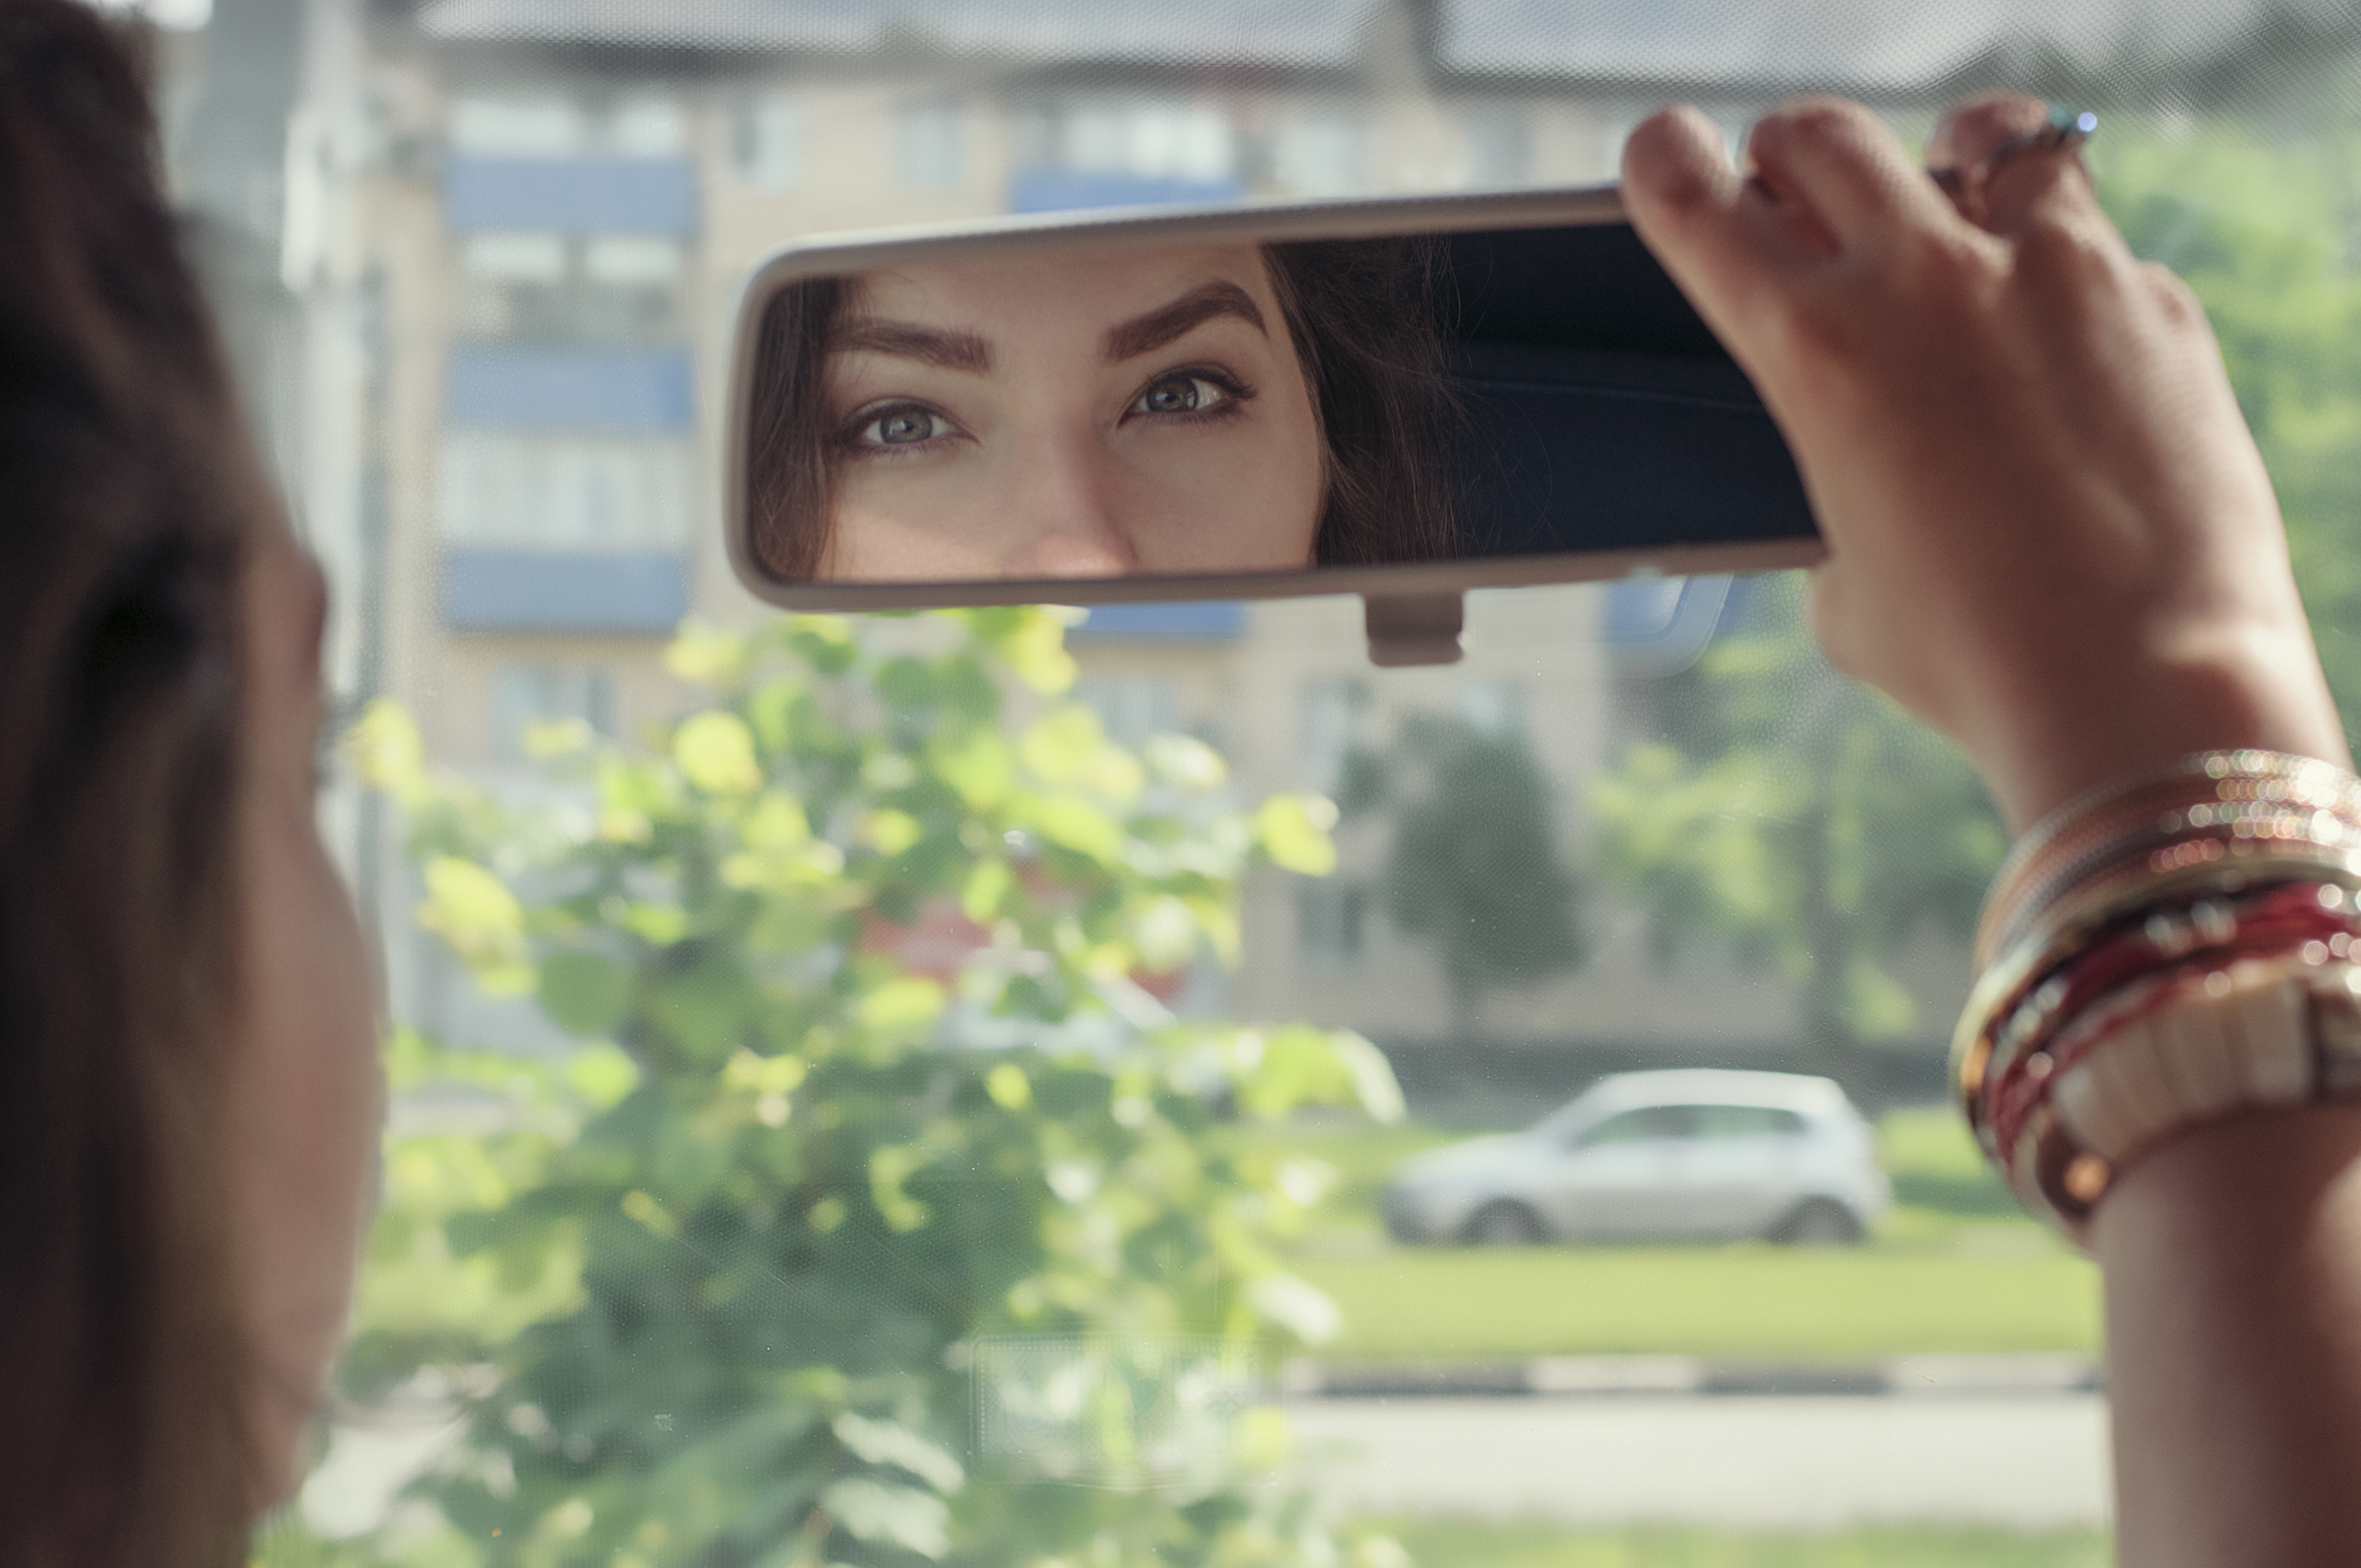 Mujer mirando su reflejo en el espejo retrovisor de un automóvil | Fuente: Shutterstock.com